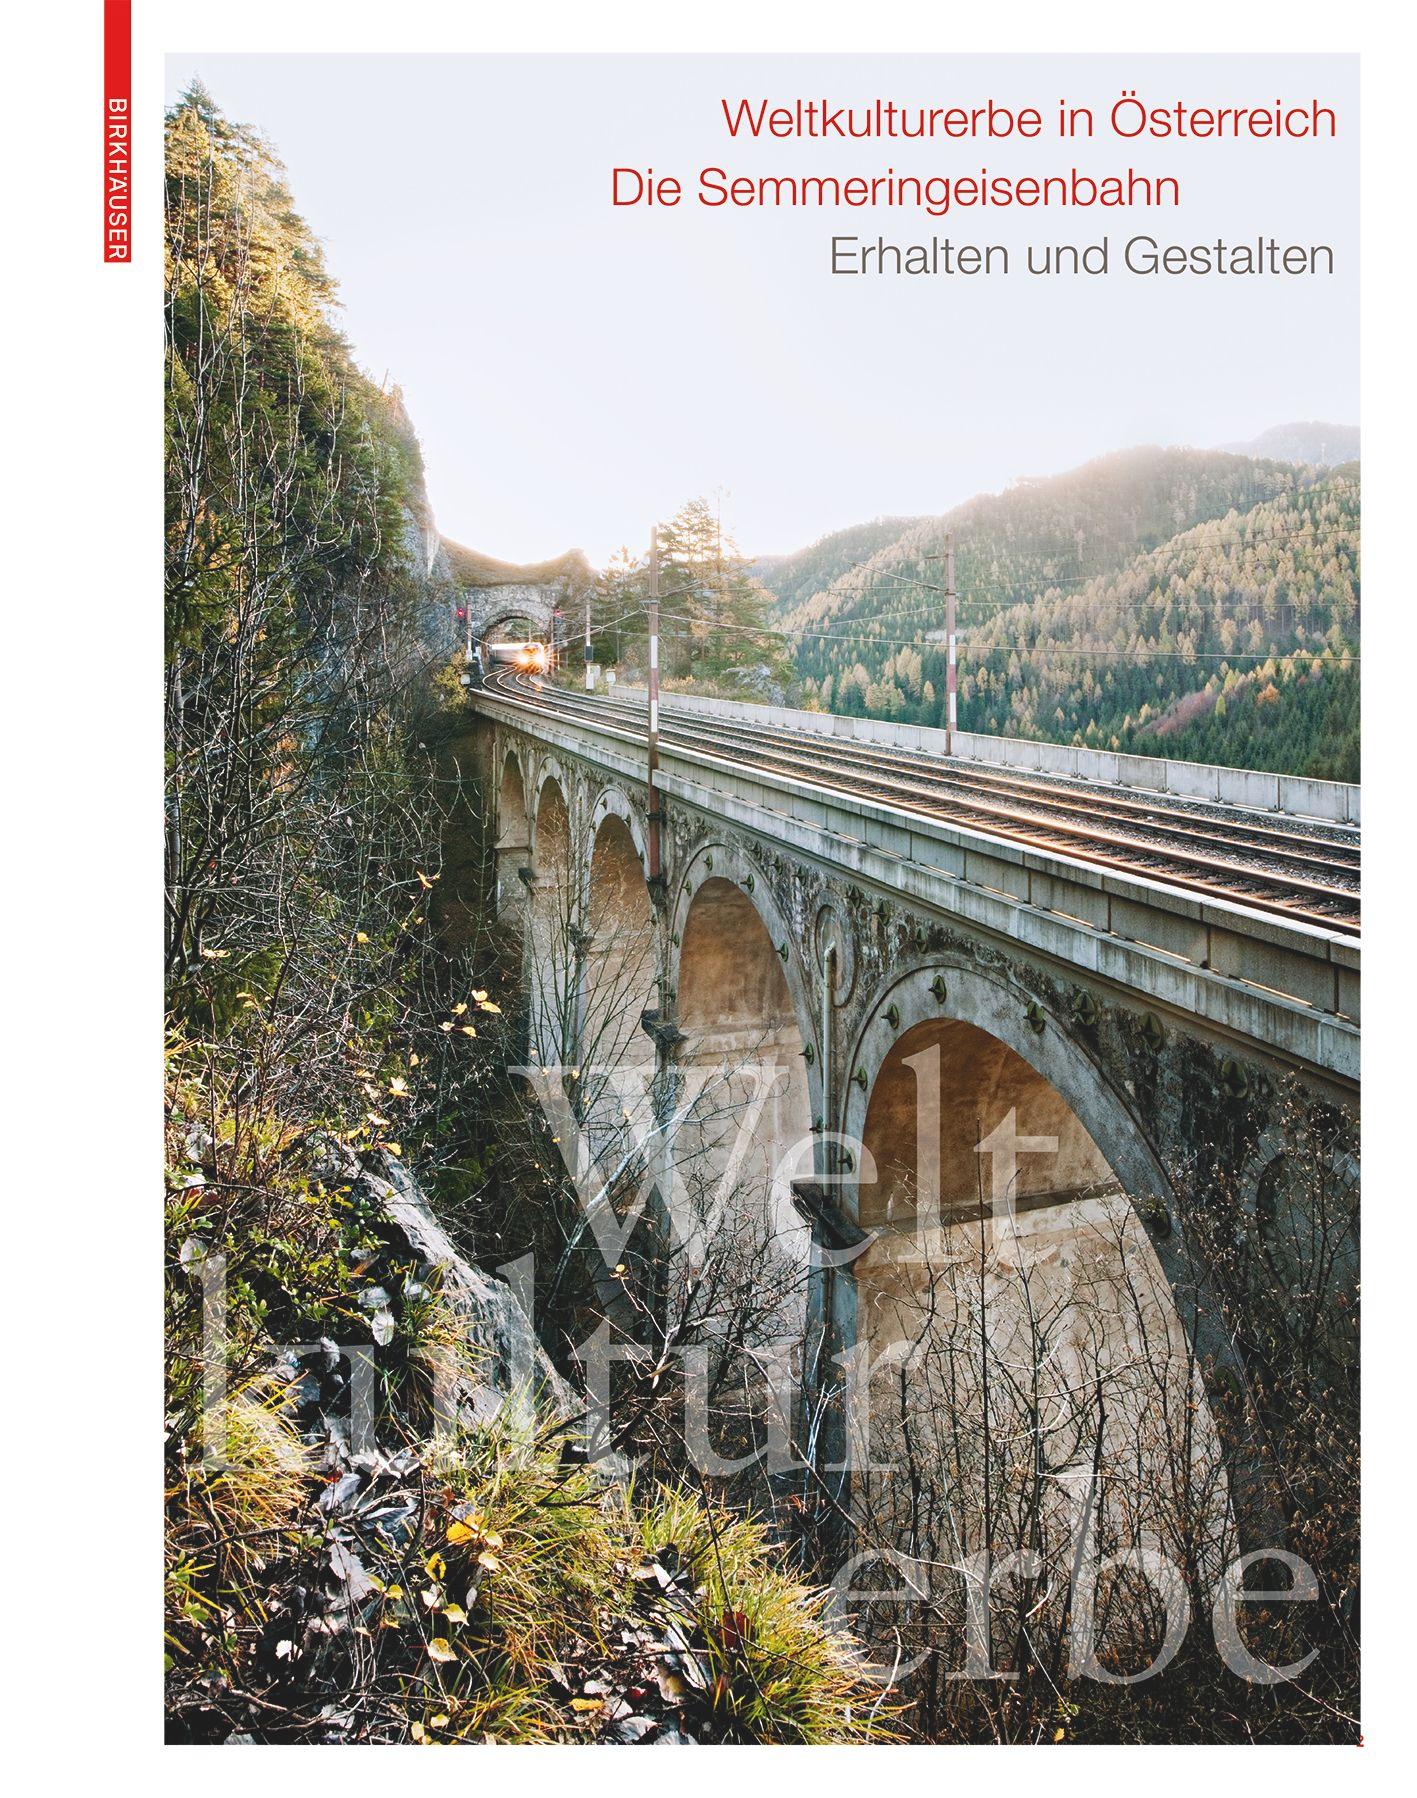 Weltkulturerbe in Österreich – Die Semmeringeisenbahn's cover